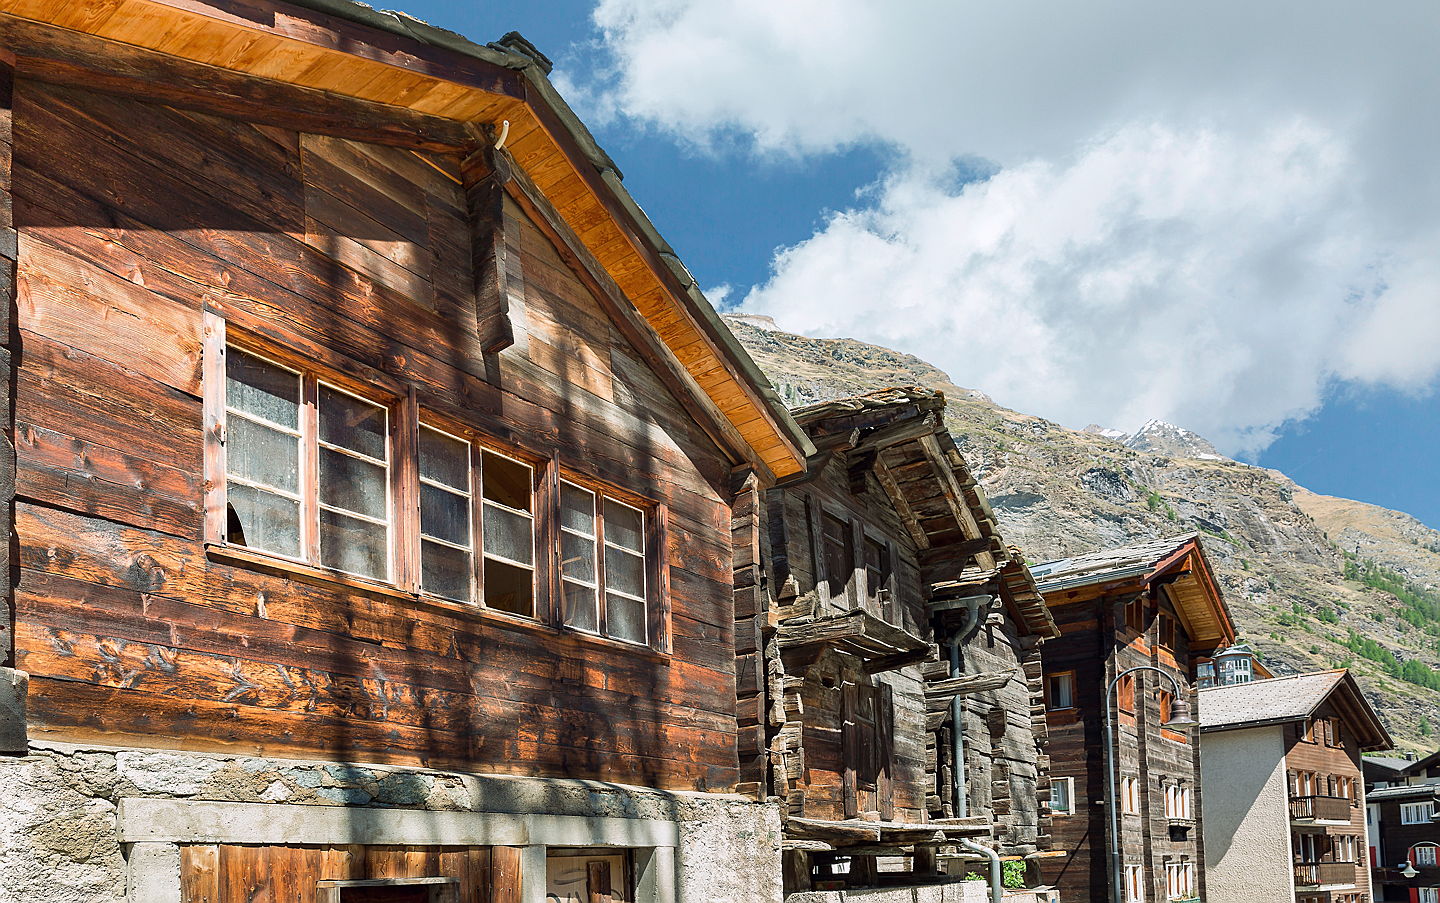  Zug
- Chalet in Zermatt